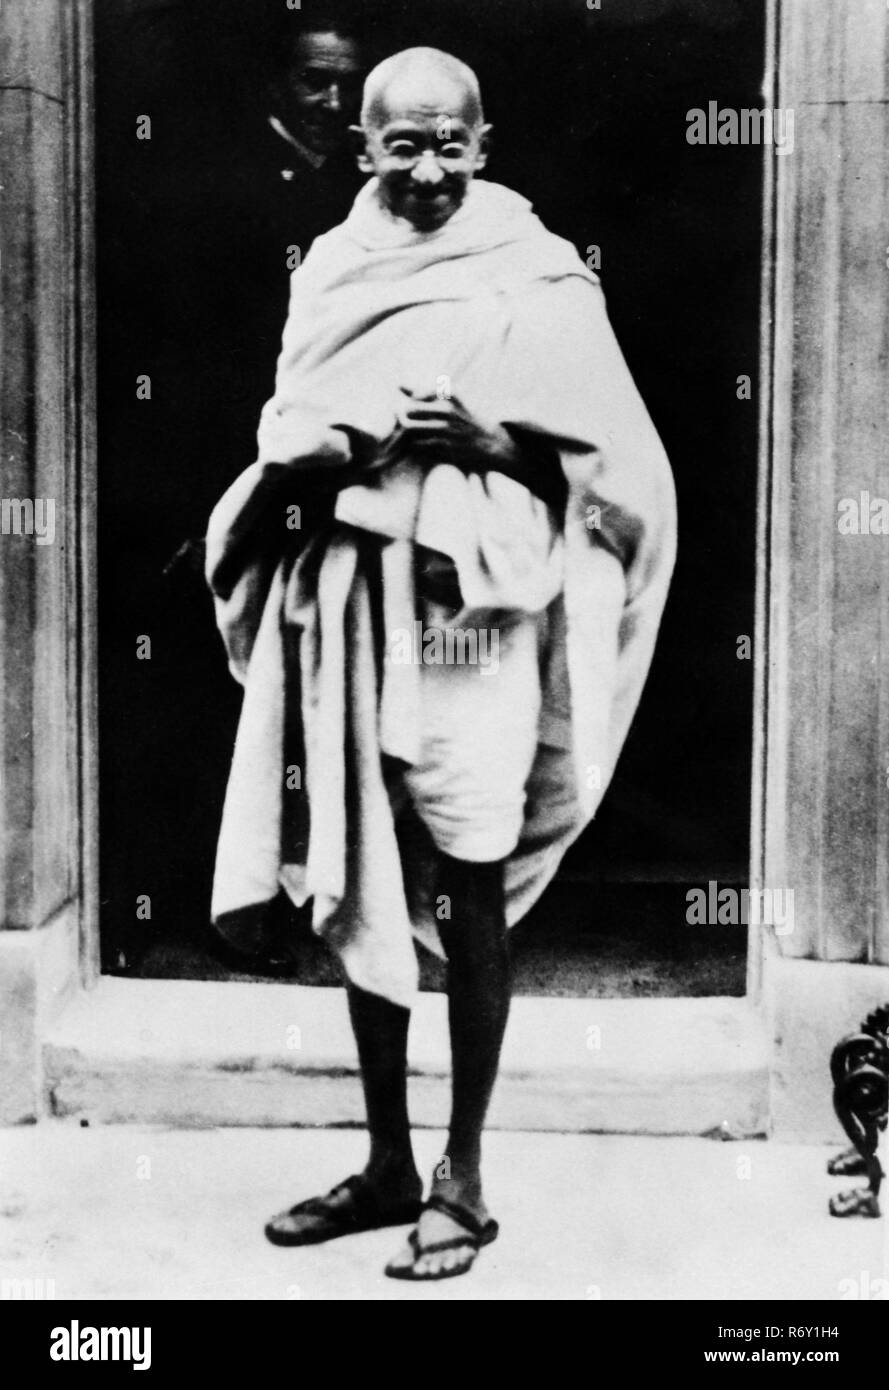 Mahatma Gandhi ritratto avvolto in scialle, fuori 10 Downing Street, Londra, Inghilterra, Regno Unito, 1930, vecchia immagine del 1900 vintage Foto Stock